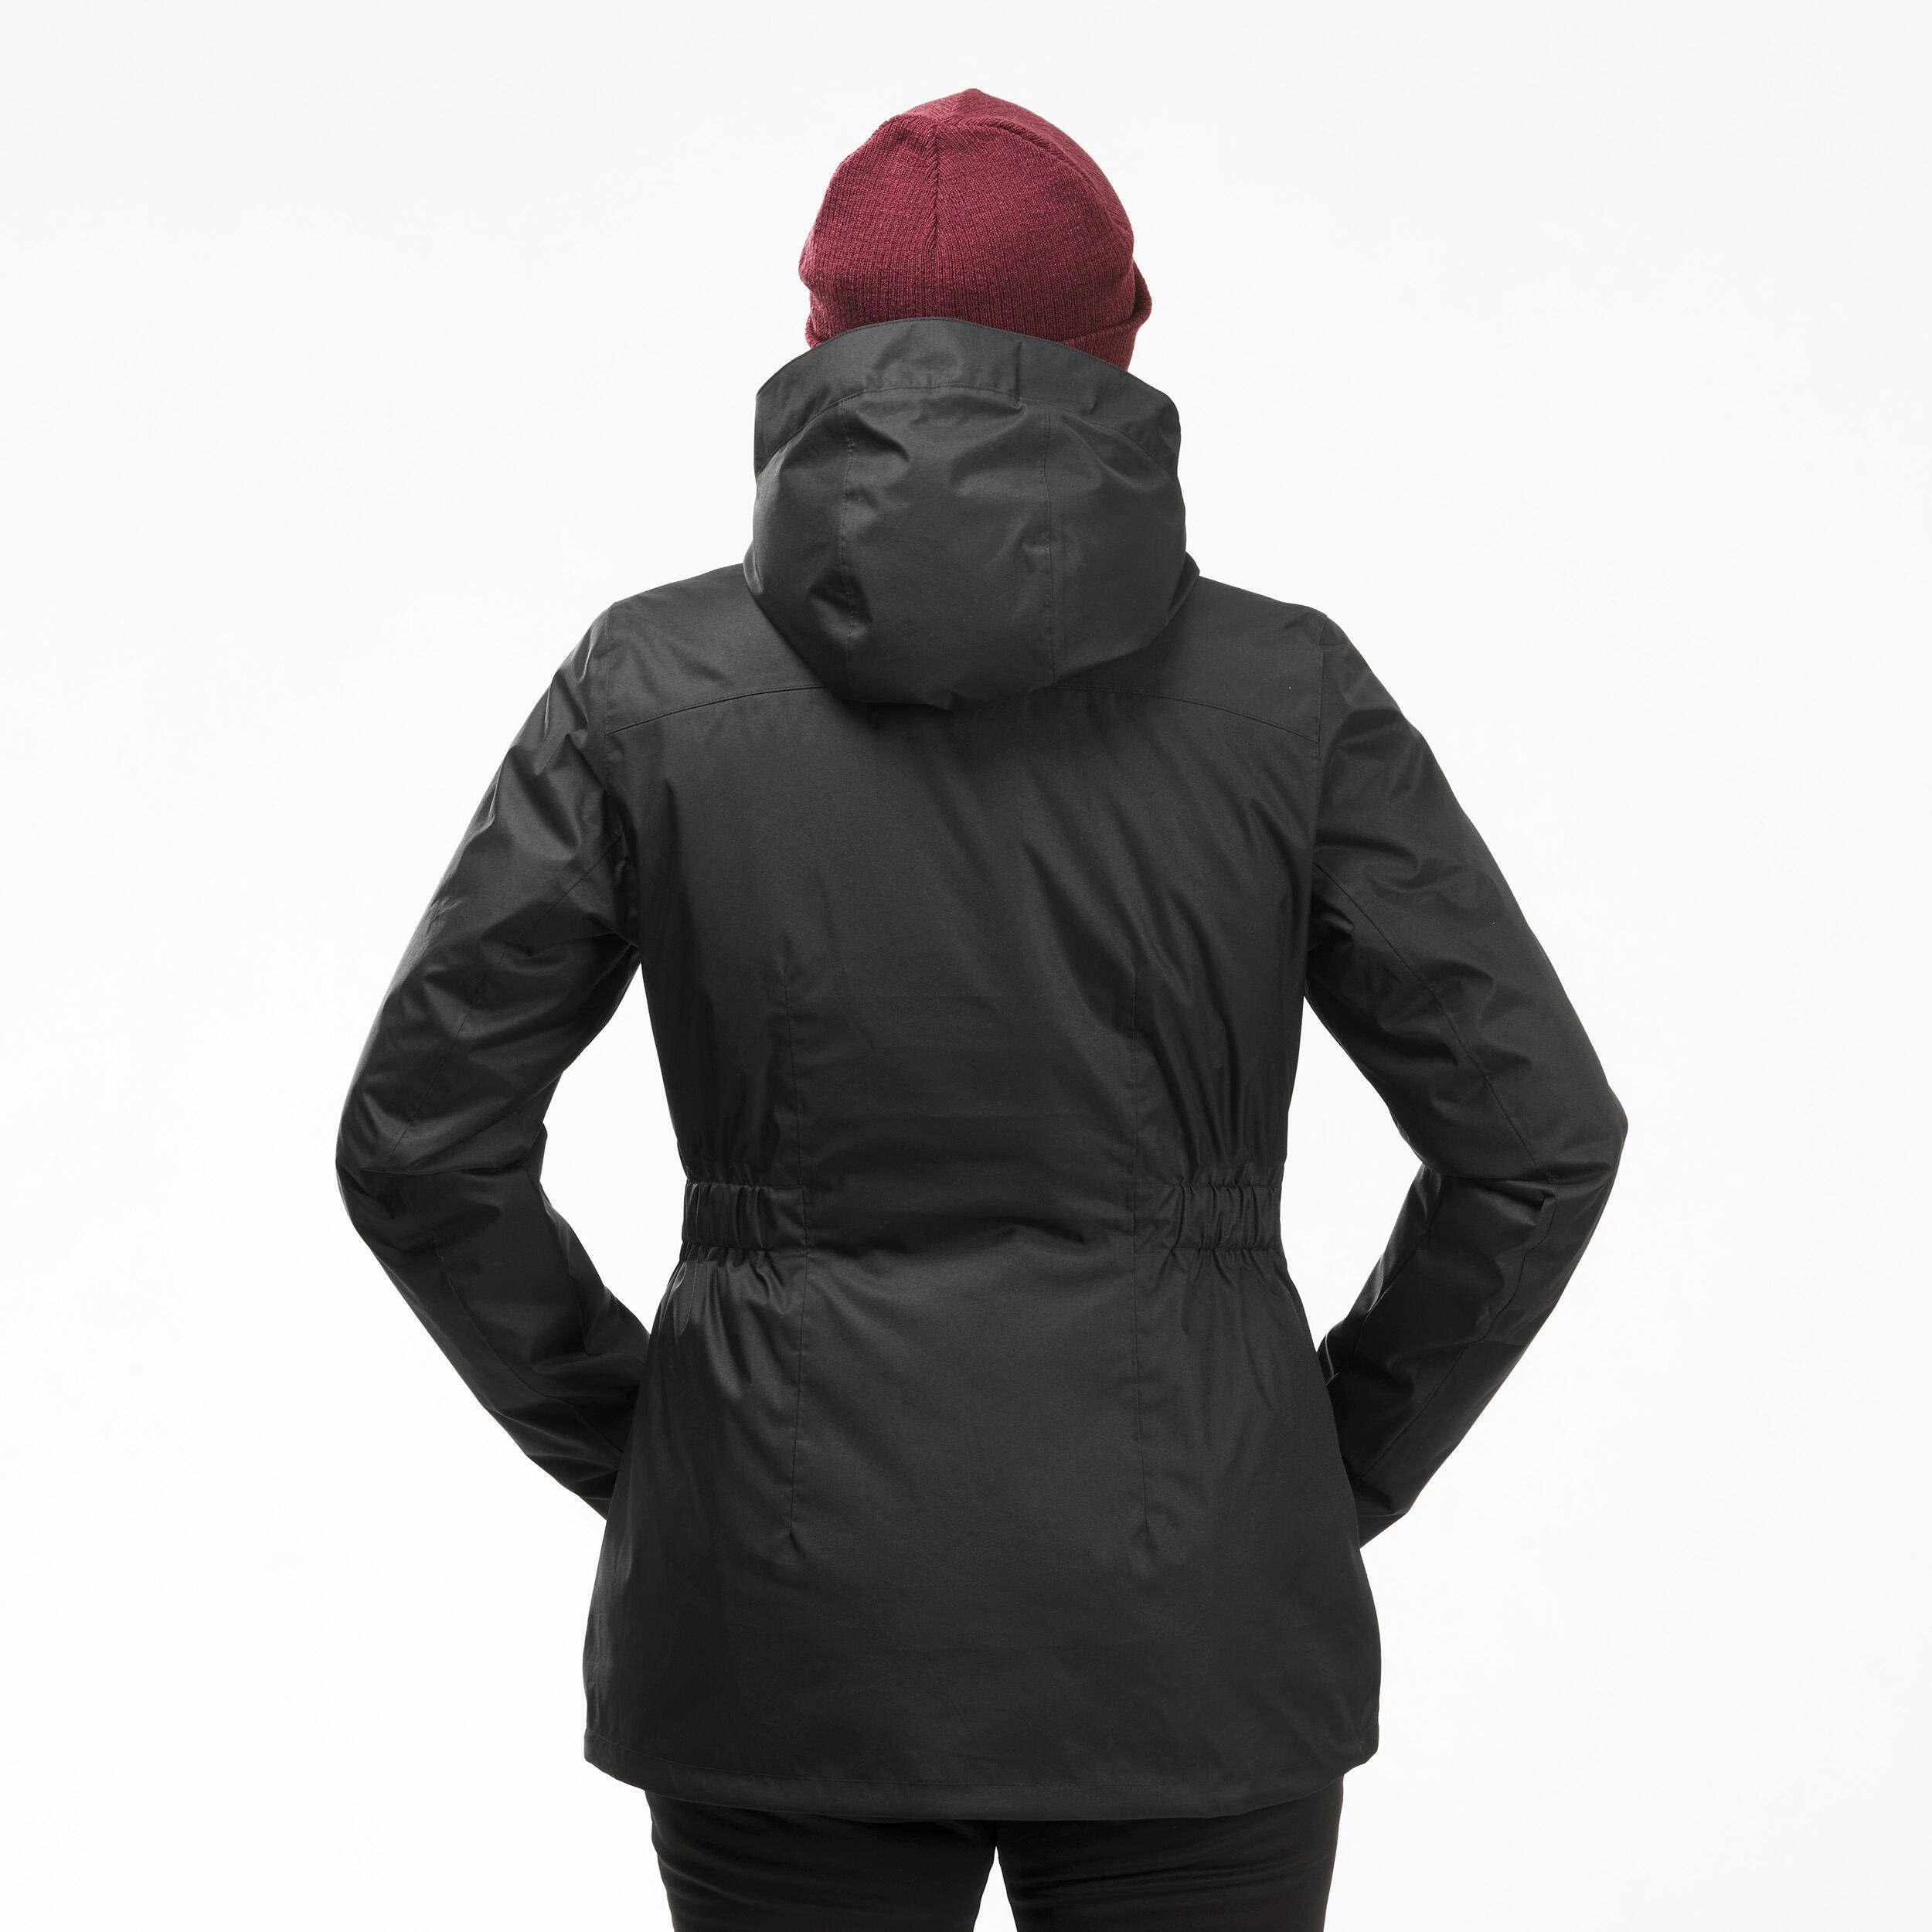 Women’s hiking waterproof winter jacket - SH500 -10°C 8/11